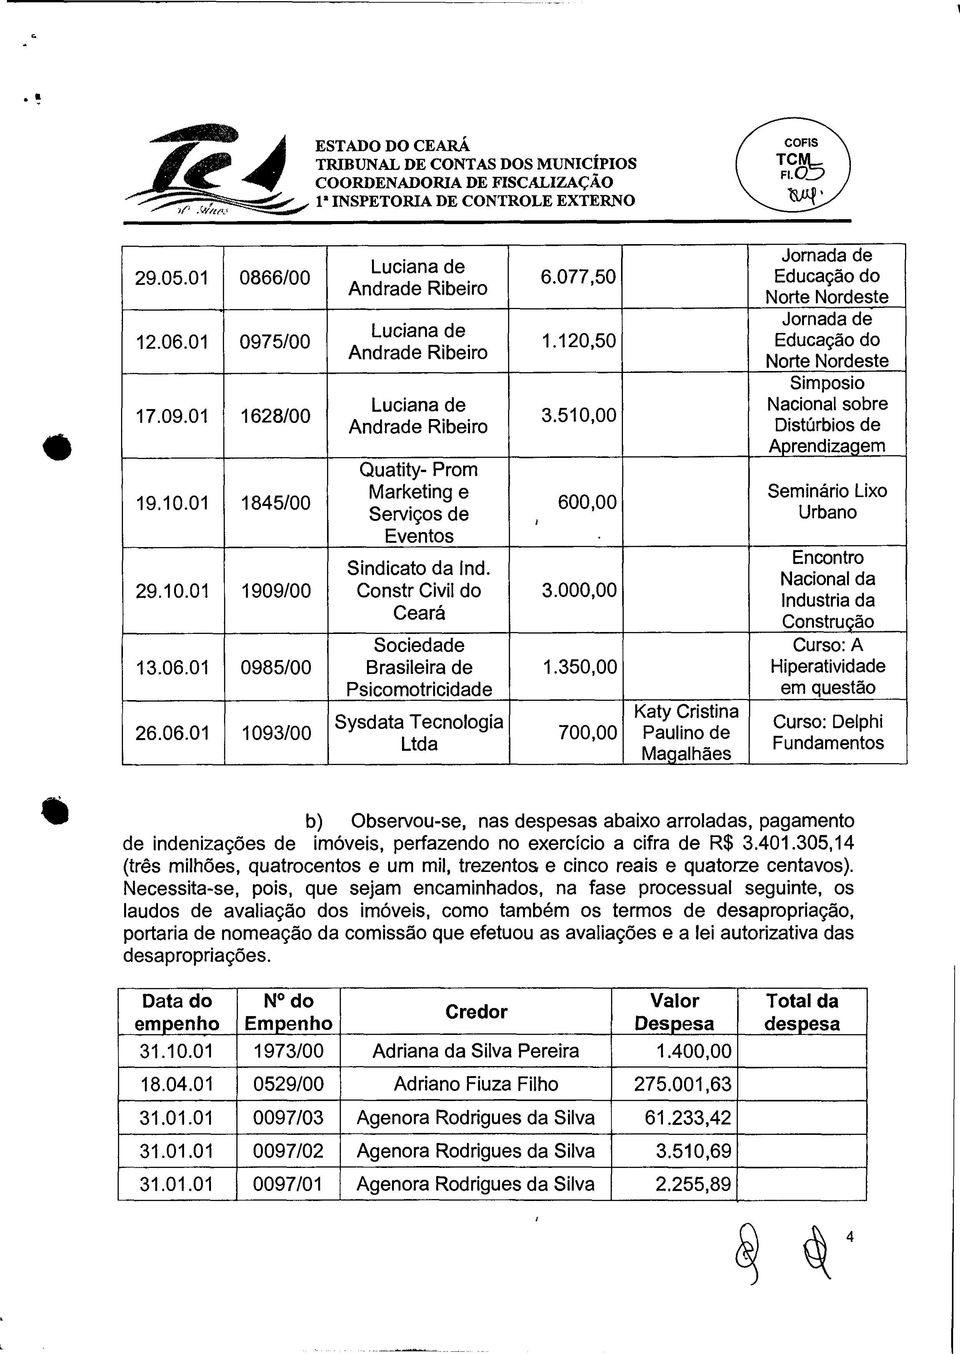 Constr Civil do Ceará Sociedade Brasileira de Psicomotricidade Sysdata Tecnologia Ltda 6.077,50 1.120,50 3.510,00 600,00 3.000,00 1.